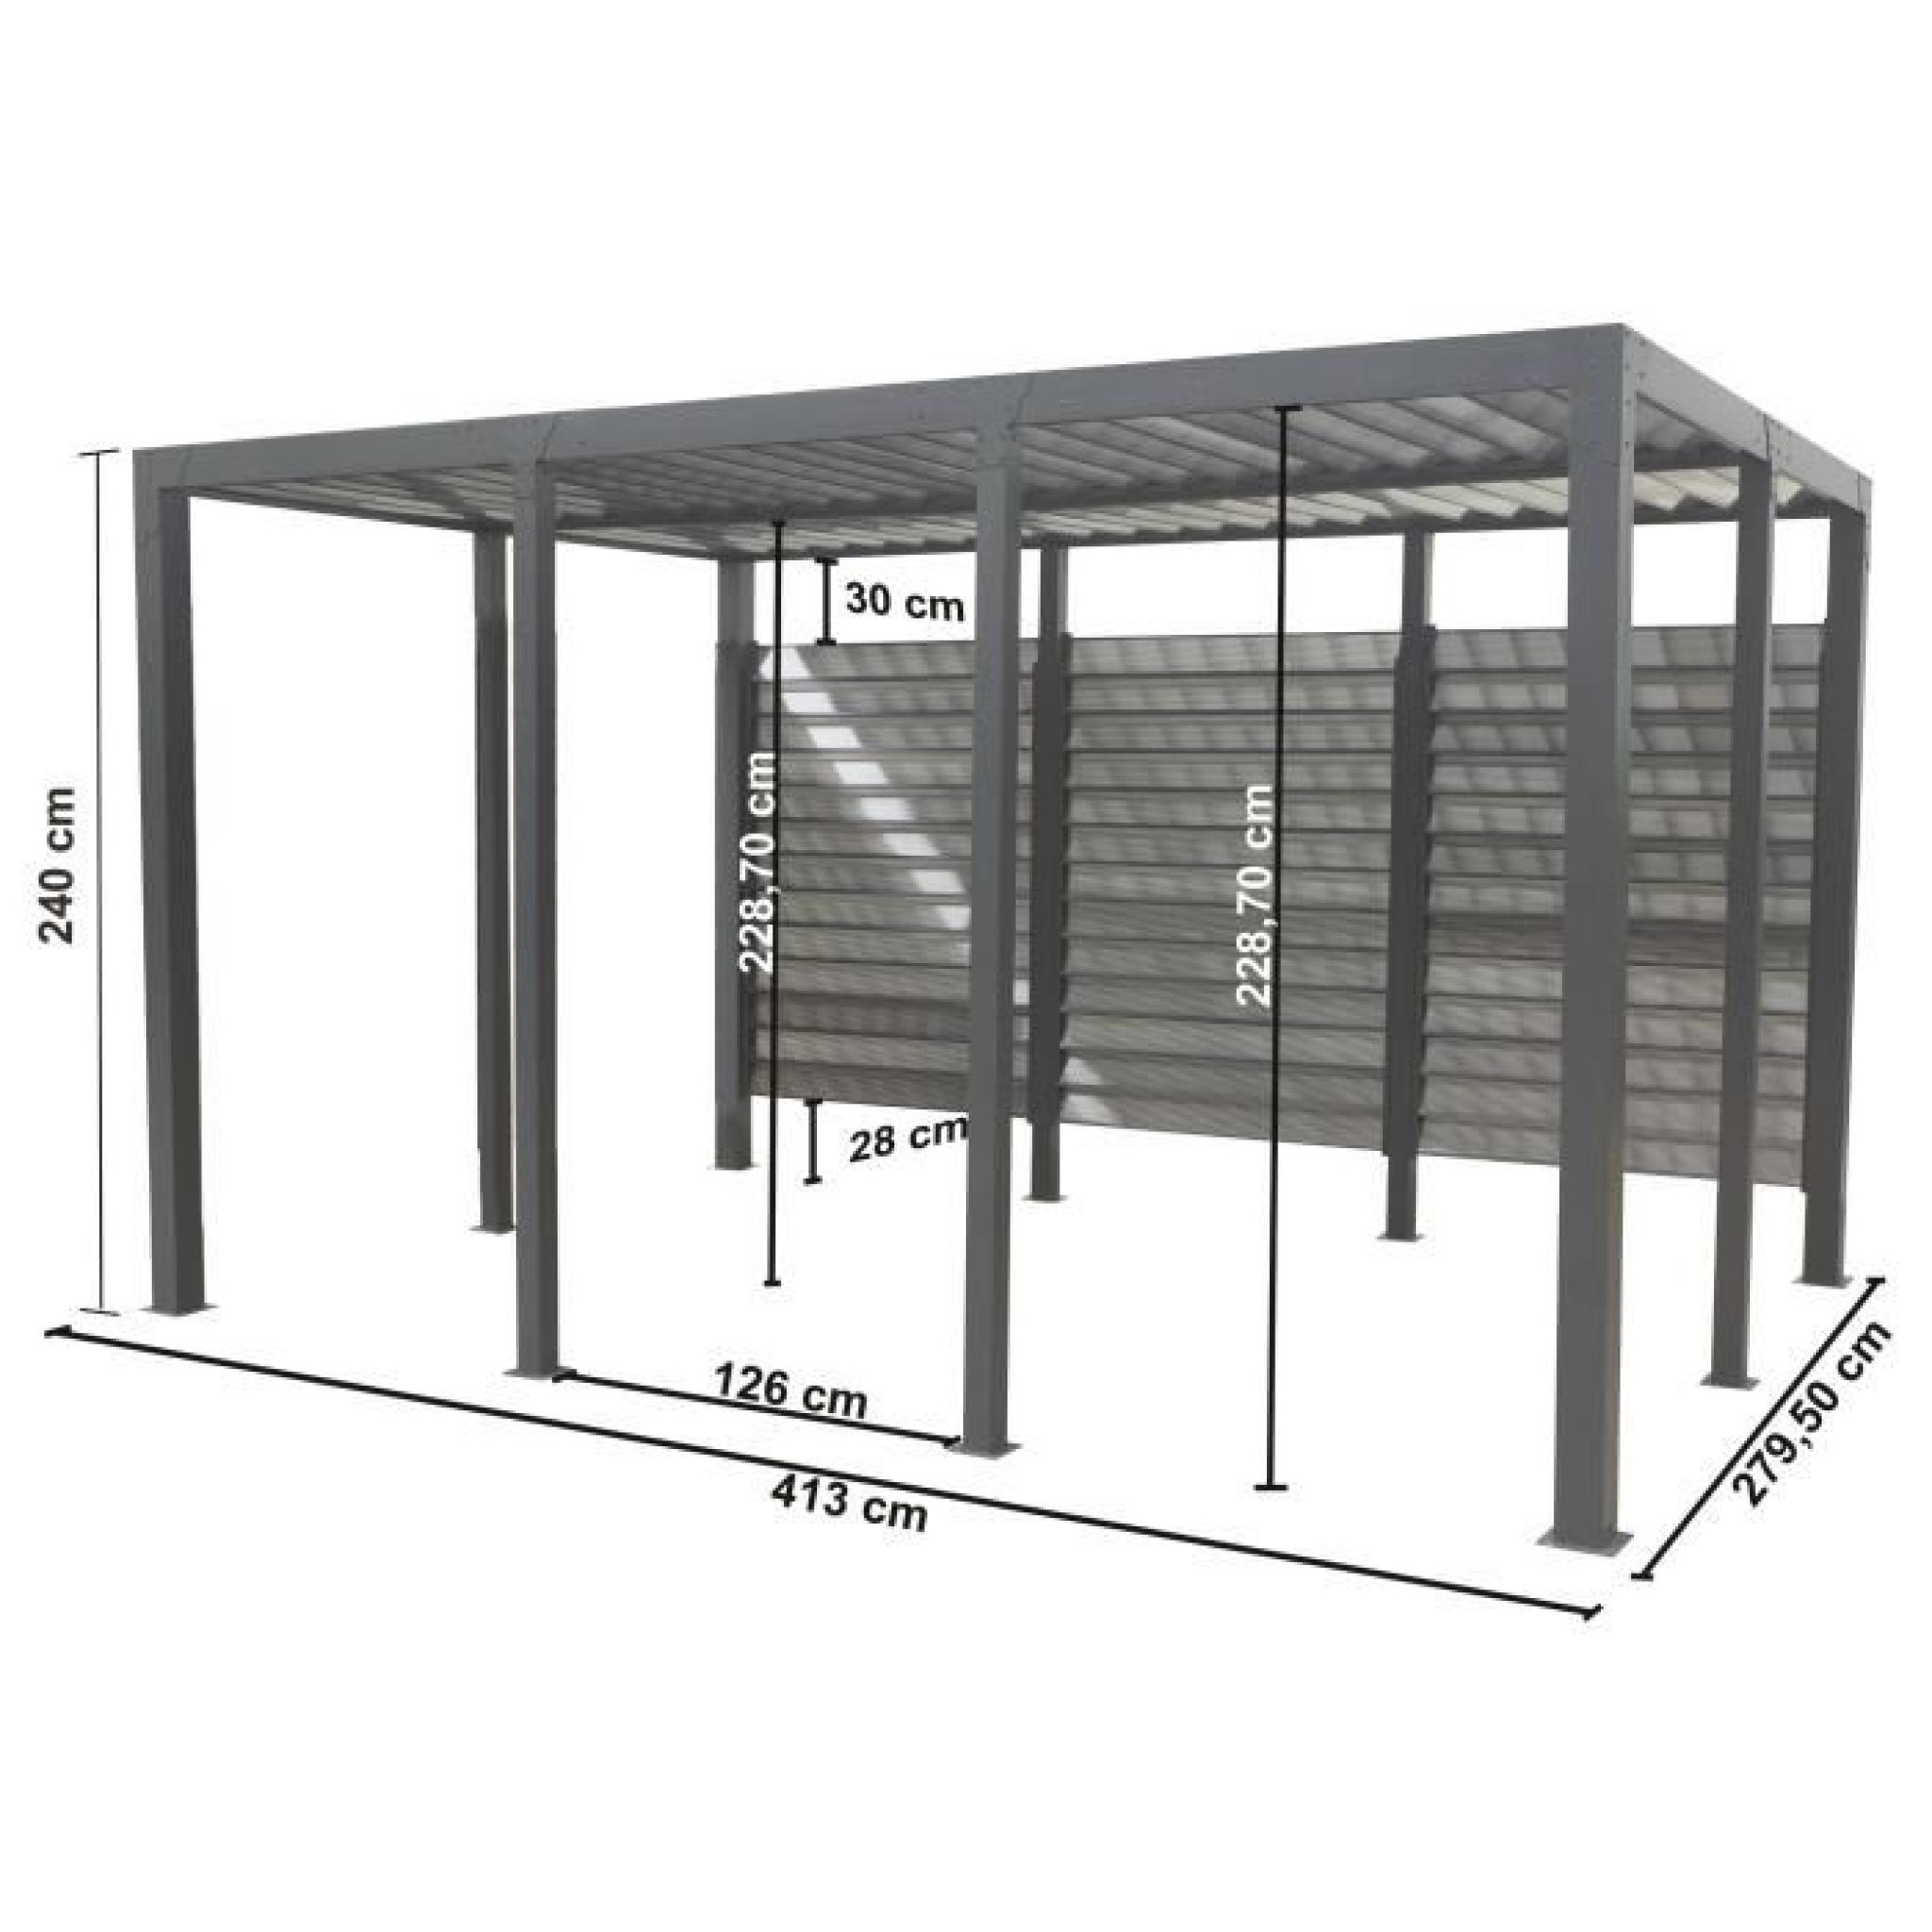 Carport aluminium 11,52 m² - 413 x 279 cm - Gris anthracite pas cher